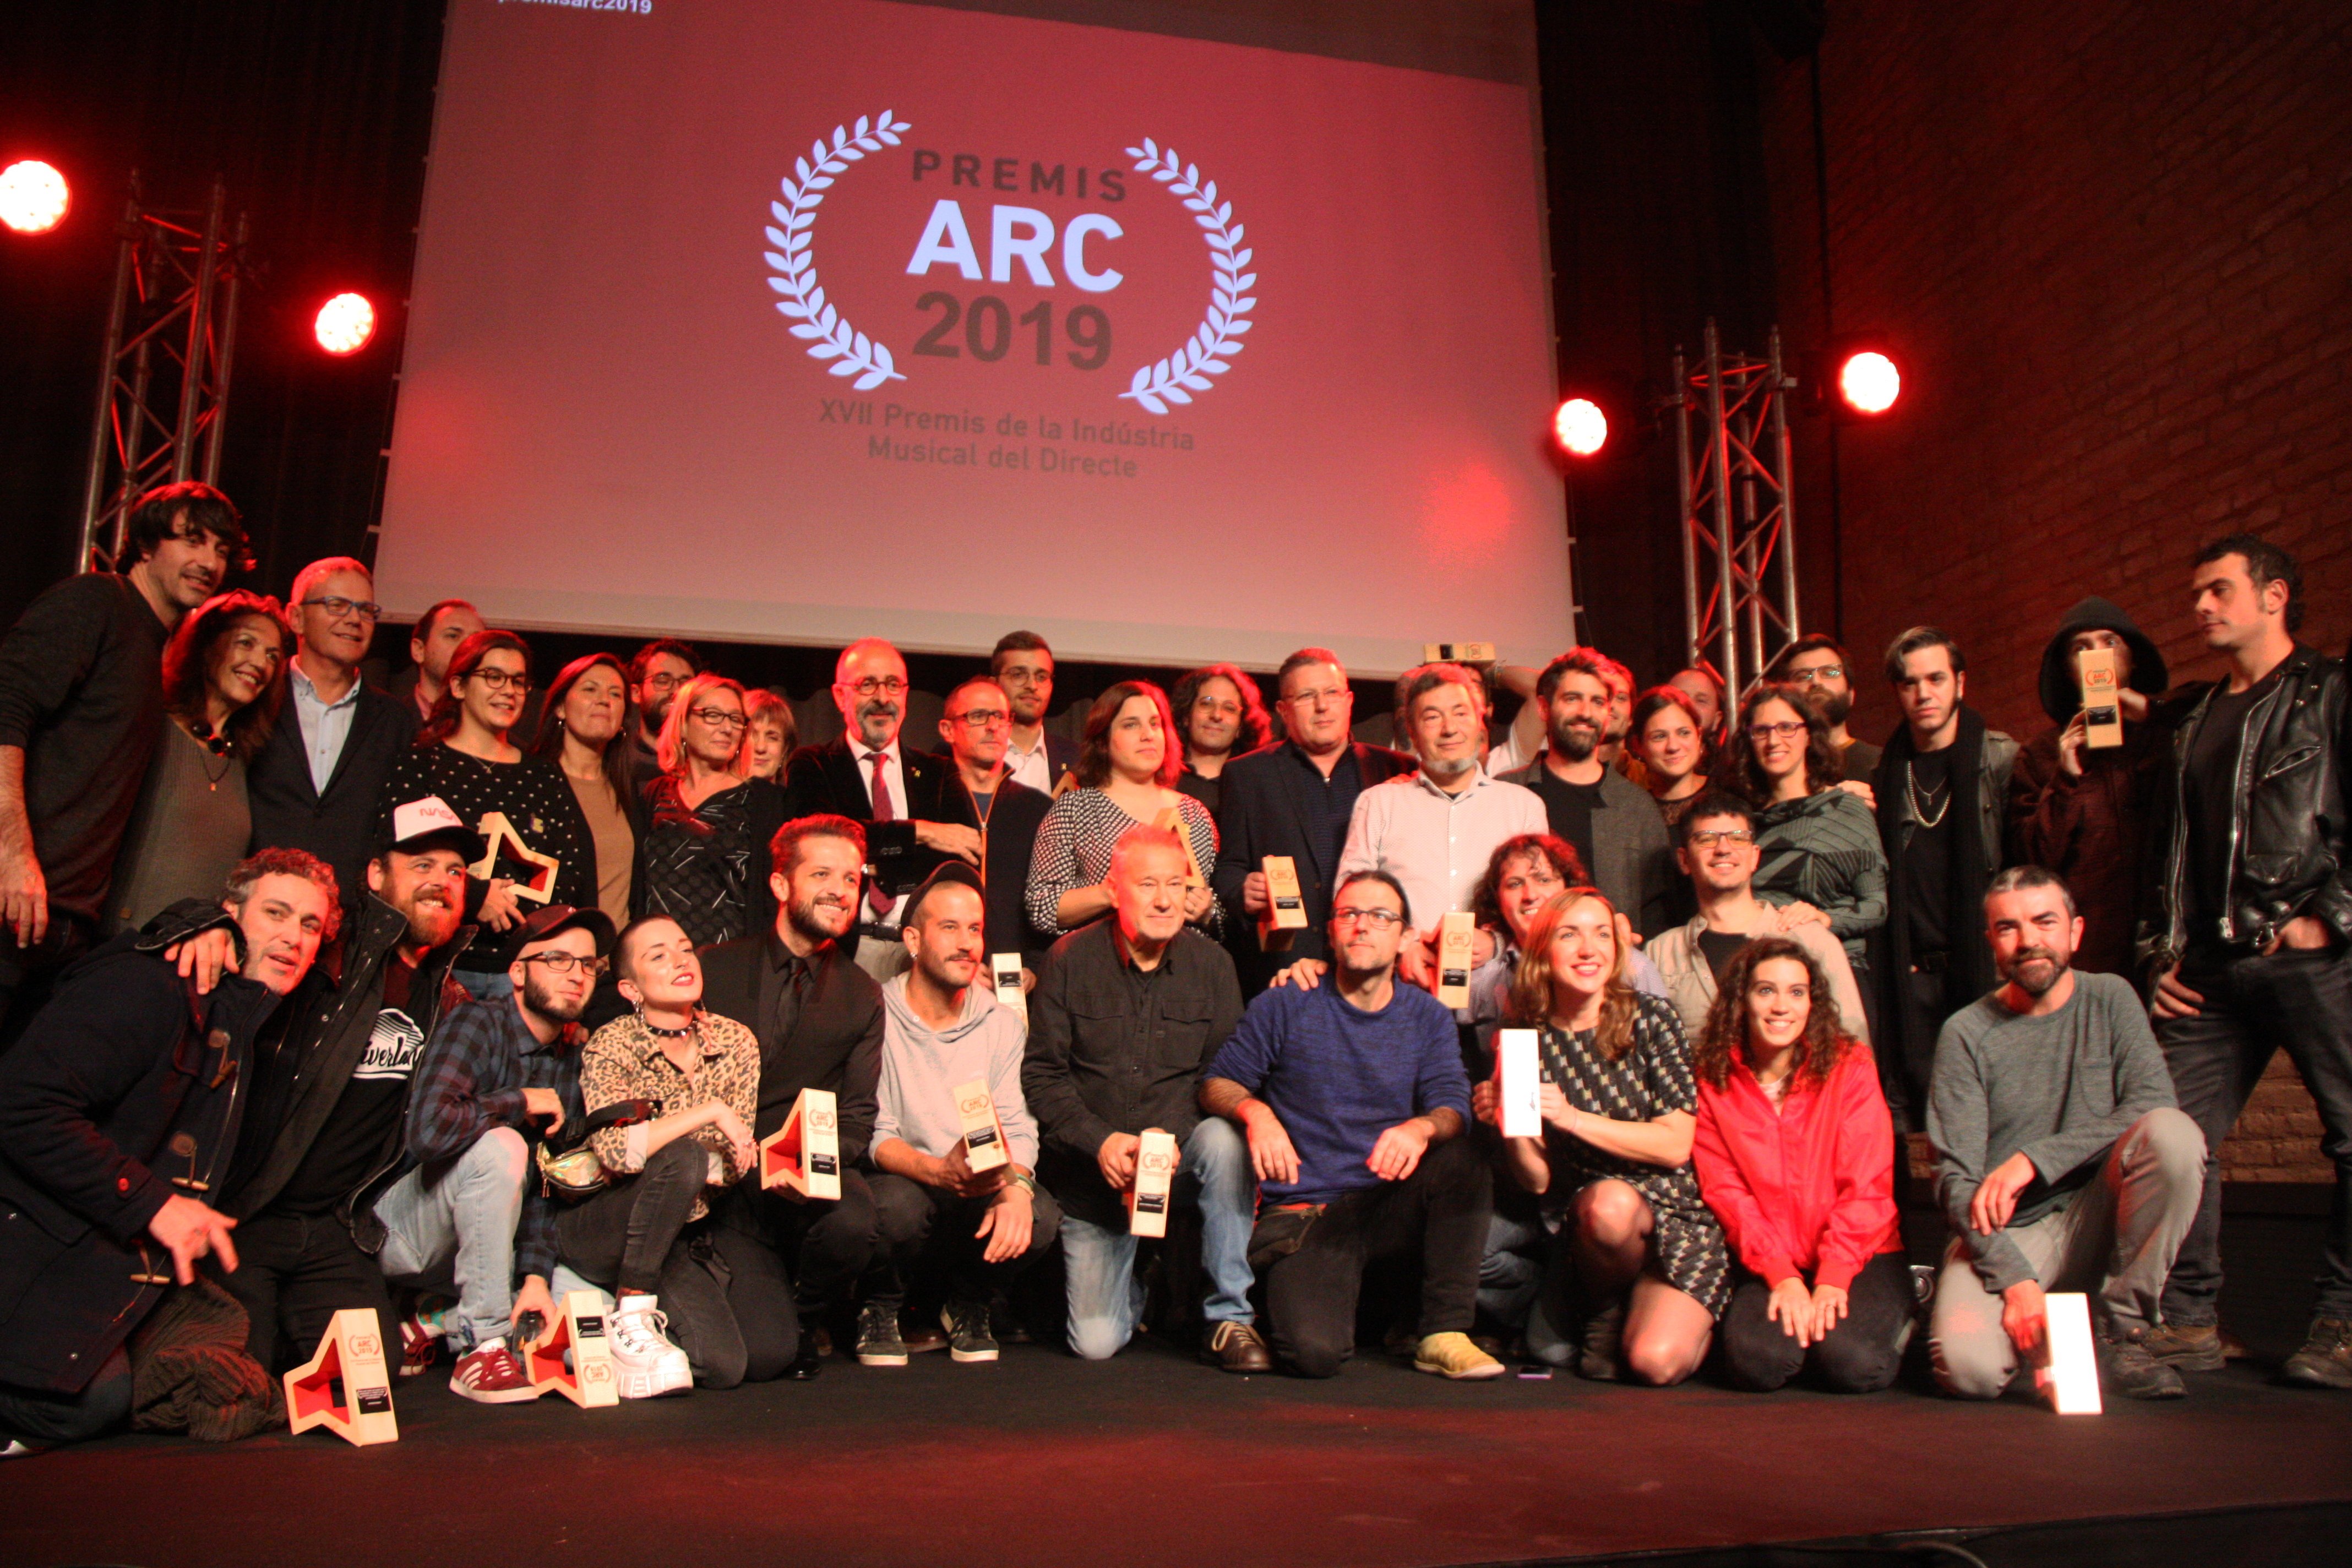 Rosalía, Oques Grasses, Joan Dausà i les Festes del Tura, guanyadors dels premis ARC 2019